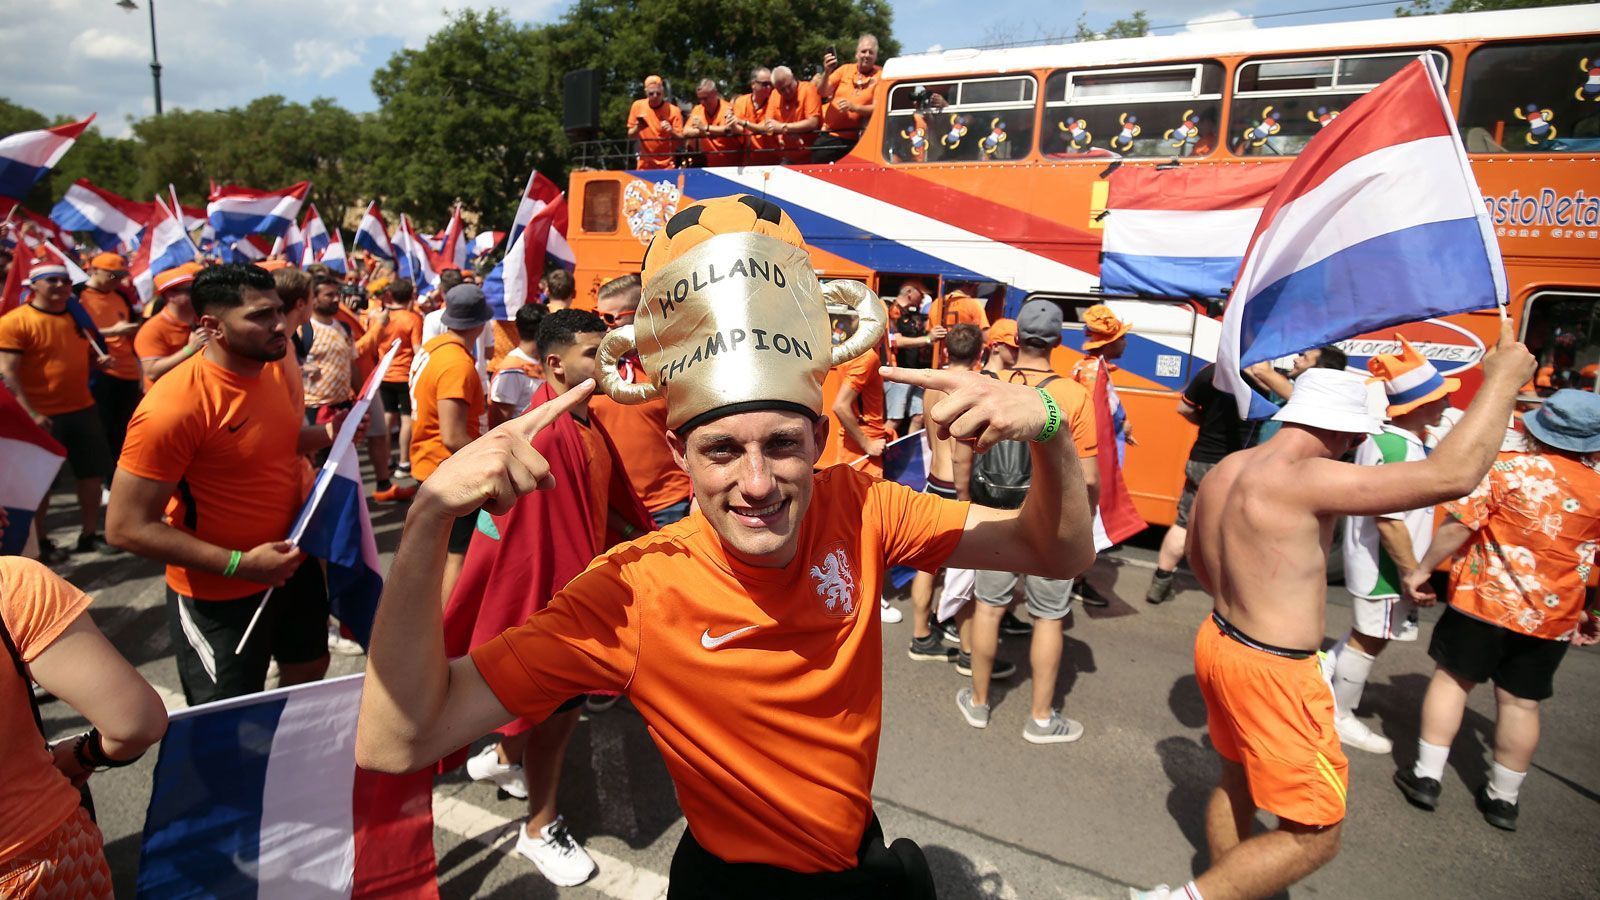 
                <strong>Der Hut ist titelreif</strong><br>
                Trägt der kommende Europameister orange? Wenn es nach diesem Anhänger geht auf jeden Fall!
              